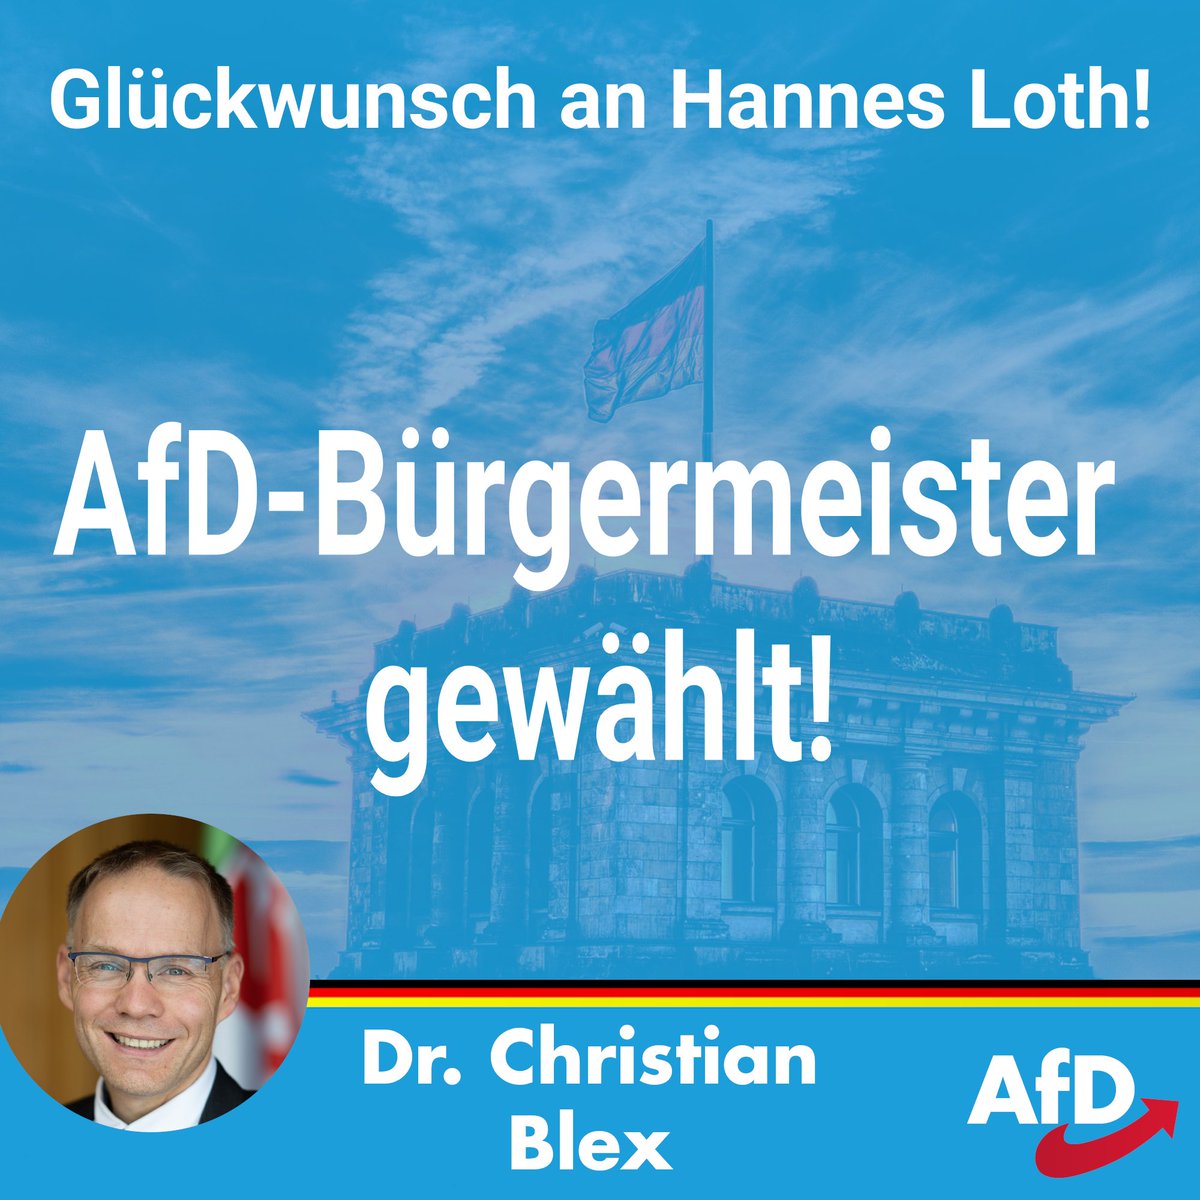 Der #AfD-Kandidat #HannesLoth hat die #Bürgermeisterwahl in #RaguhnJeßnitz (Sachsen-Anhalt) gewonnen. Nach dem ersten #AfDLandrat gibt es damit nun auch den ersten hauptamtlichen #AfDBürgermeister.

Loth gewann mit 51,13 % gegen den Nils Naumann mit 48,87 %.